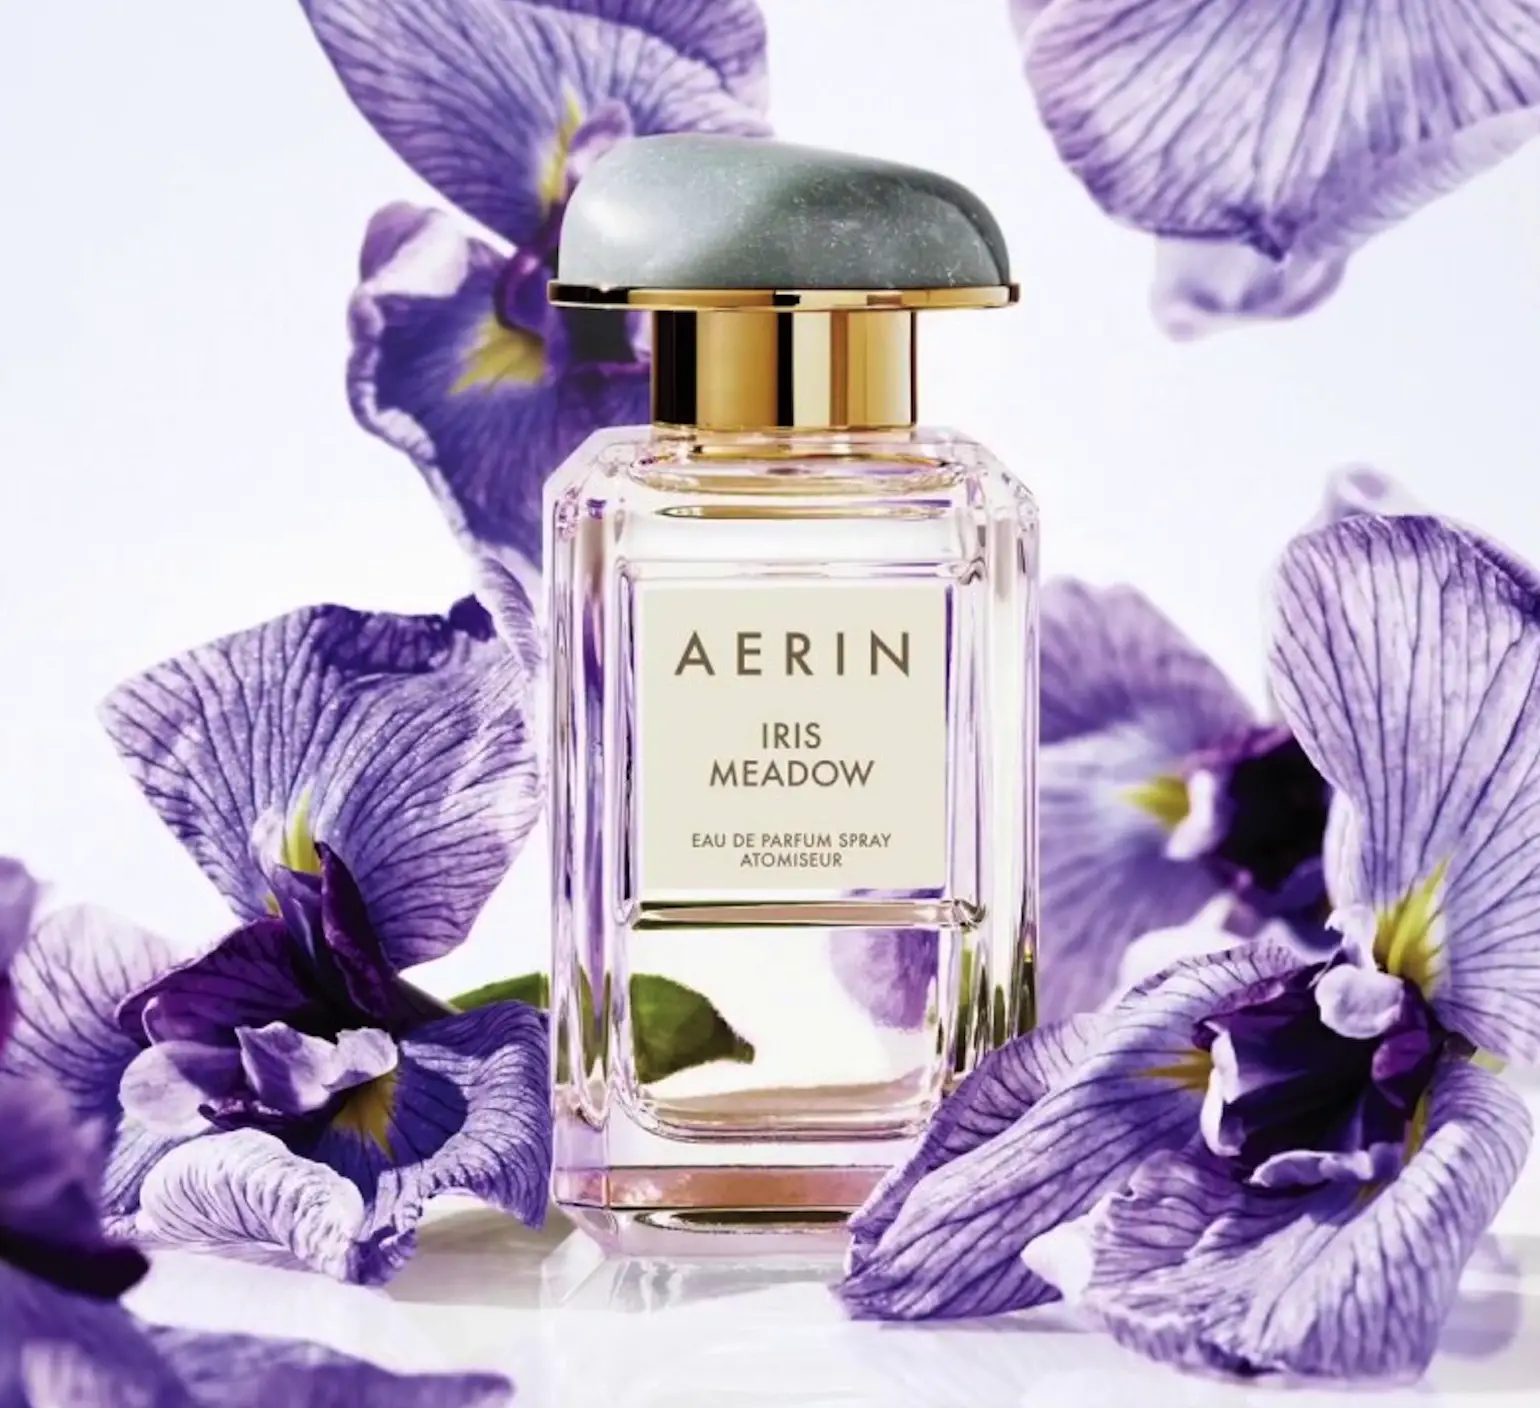 AERIN Iris Meadow
Best Iris Perfumes